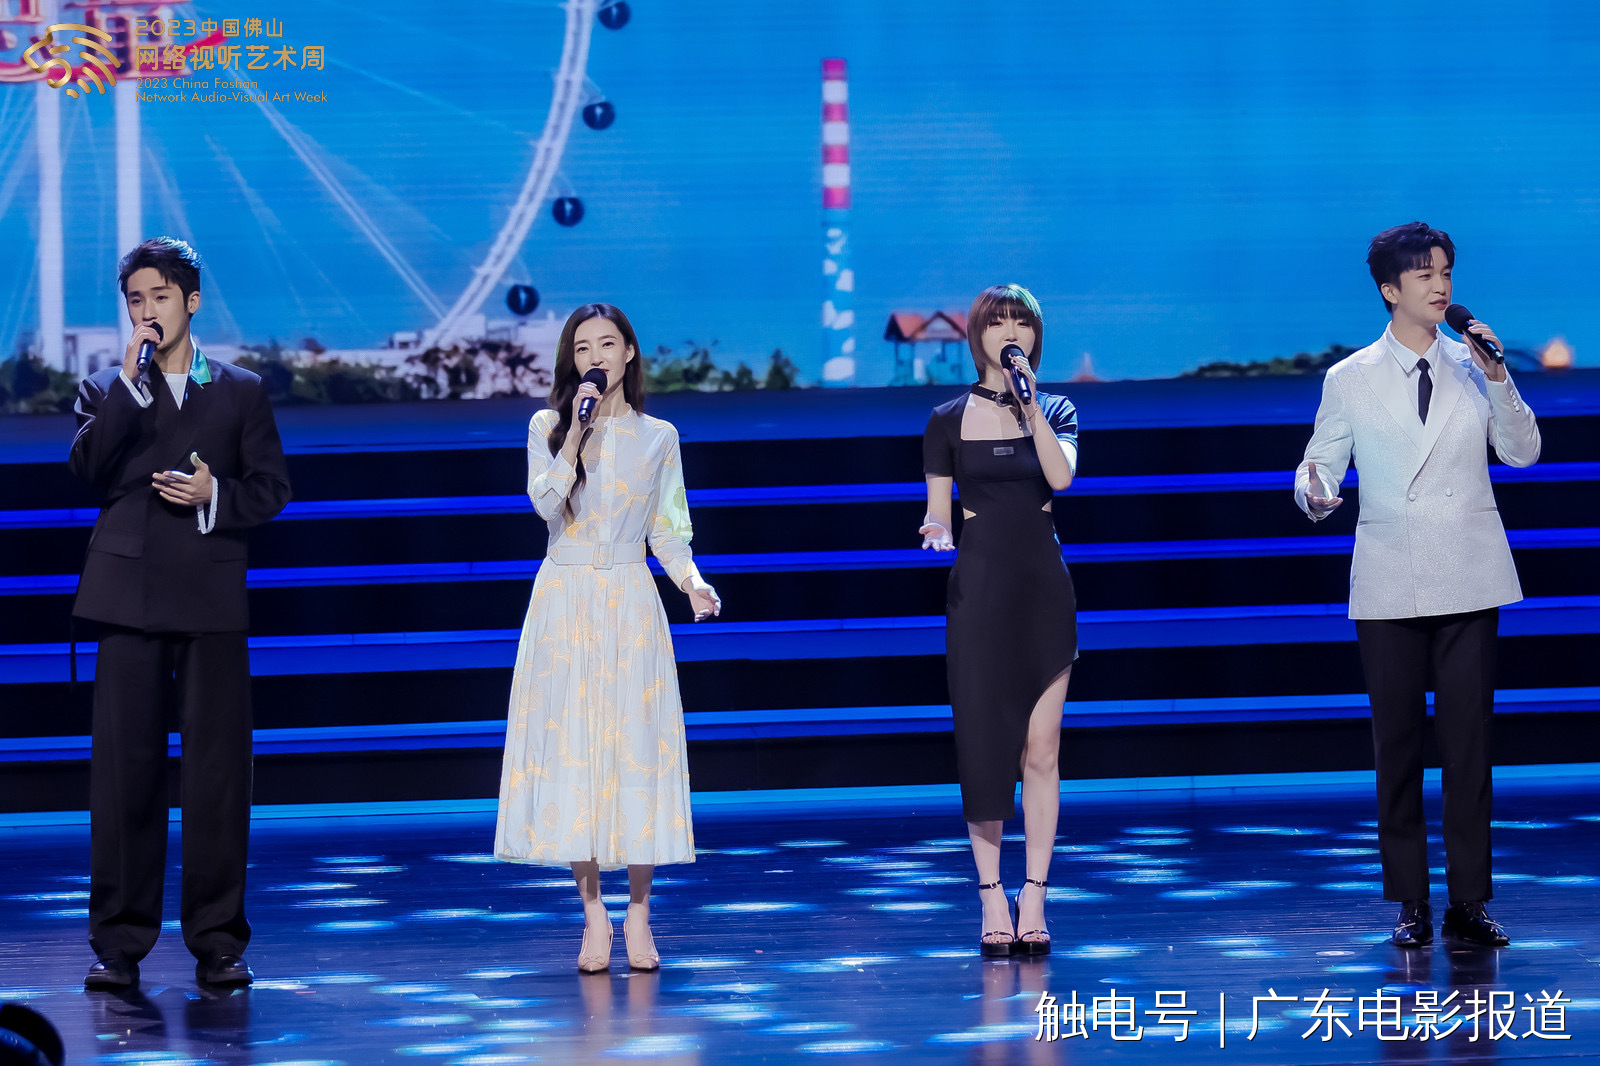 从左往右：张赫、王丽坤、汪睿、黄子弘凡演唱艺术周主题曲《此生遇见》